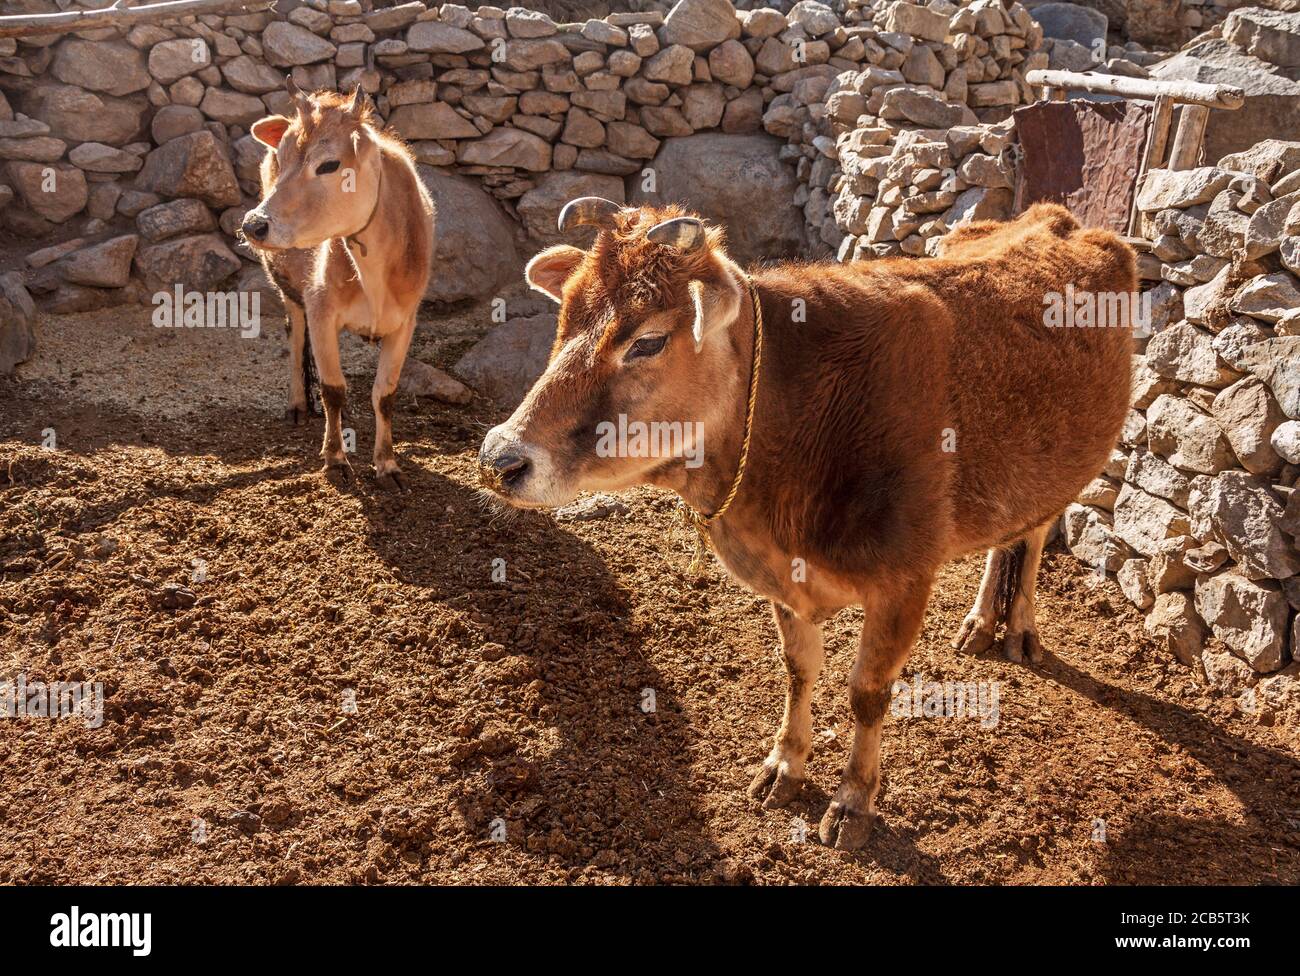 Agricoltura indiana: Mucche in una penna di pietra nella luce soffusa del mattino negli altopiani della valle di Spiti, Himachal Pradesh, India Foto Stock